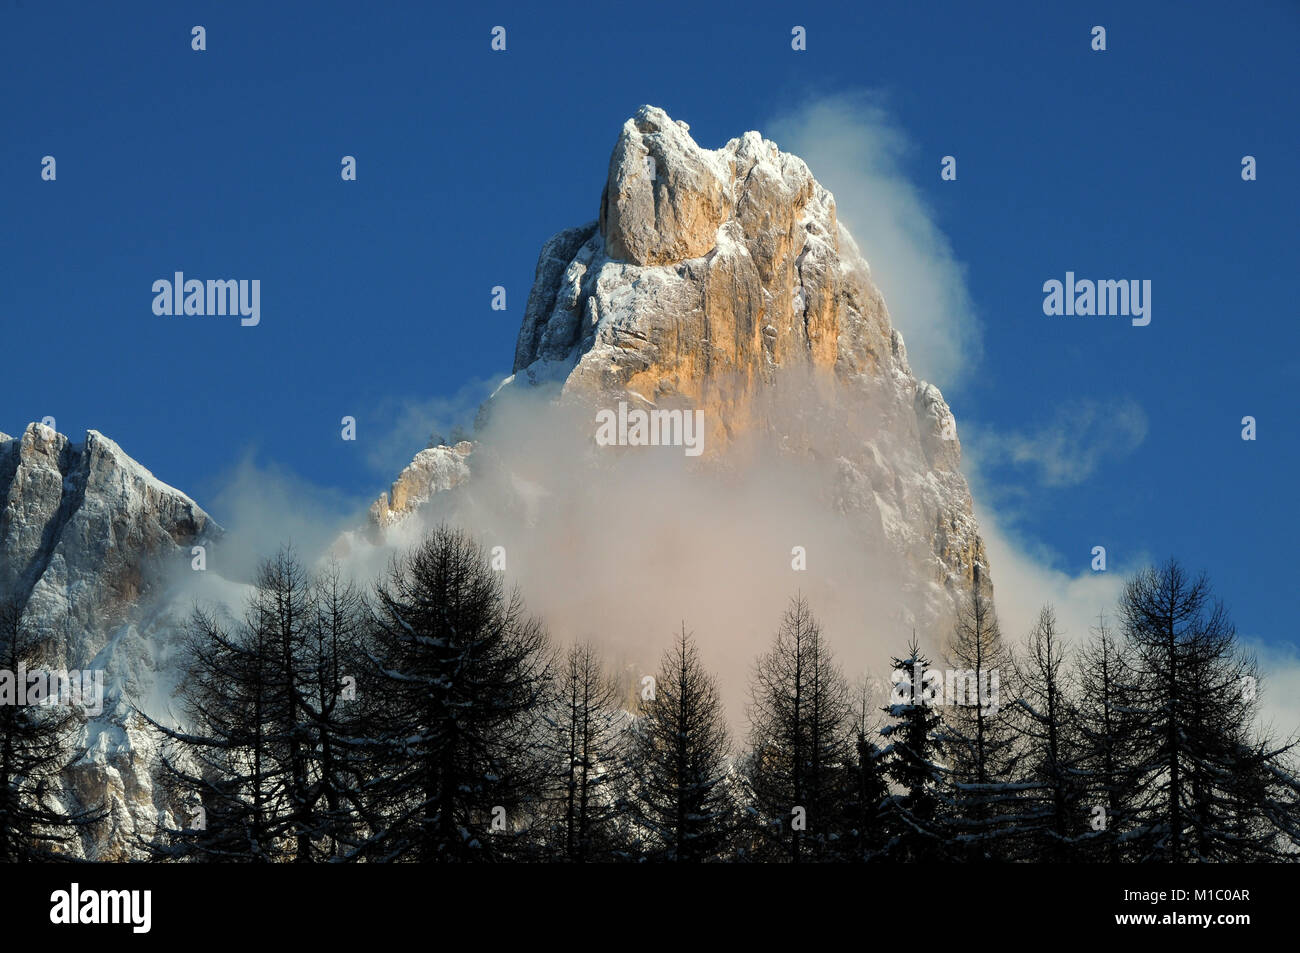 Cimon della Pala, mountain group Pale di San Martino in the Italian Dolomites, Europe. Stock Photo